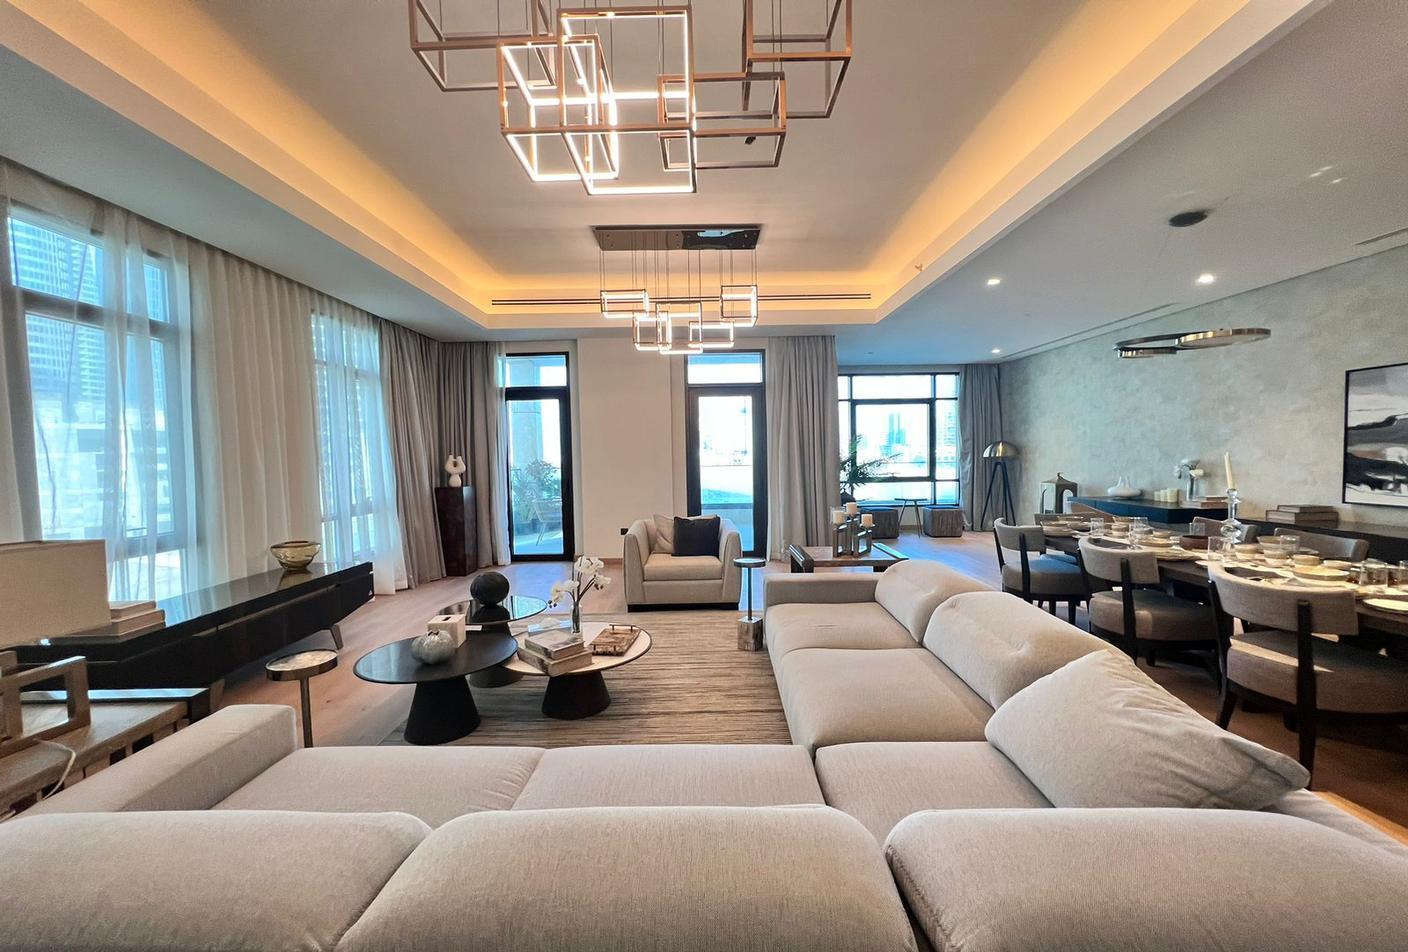 3 bed, 5 bath Hotel & Hotel Apartment for sale in One Reem Island, Shams Abu Dhabi, Al Reem Island, Abu Dhabi for price AED 4120000 